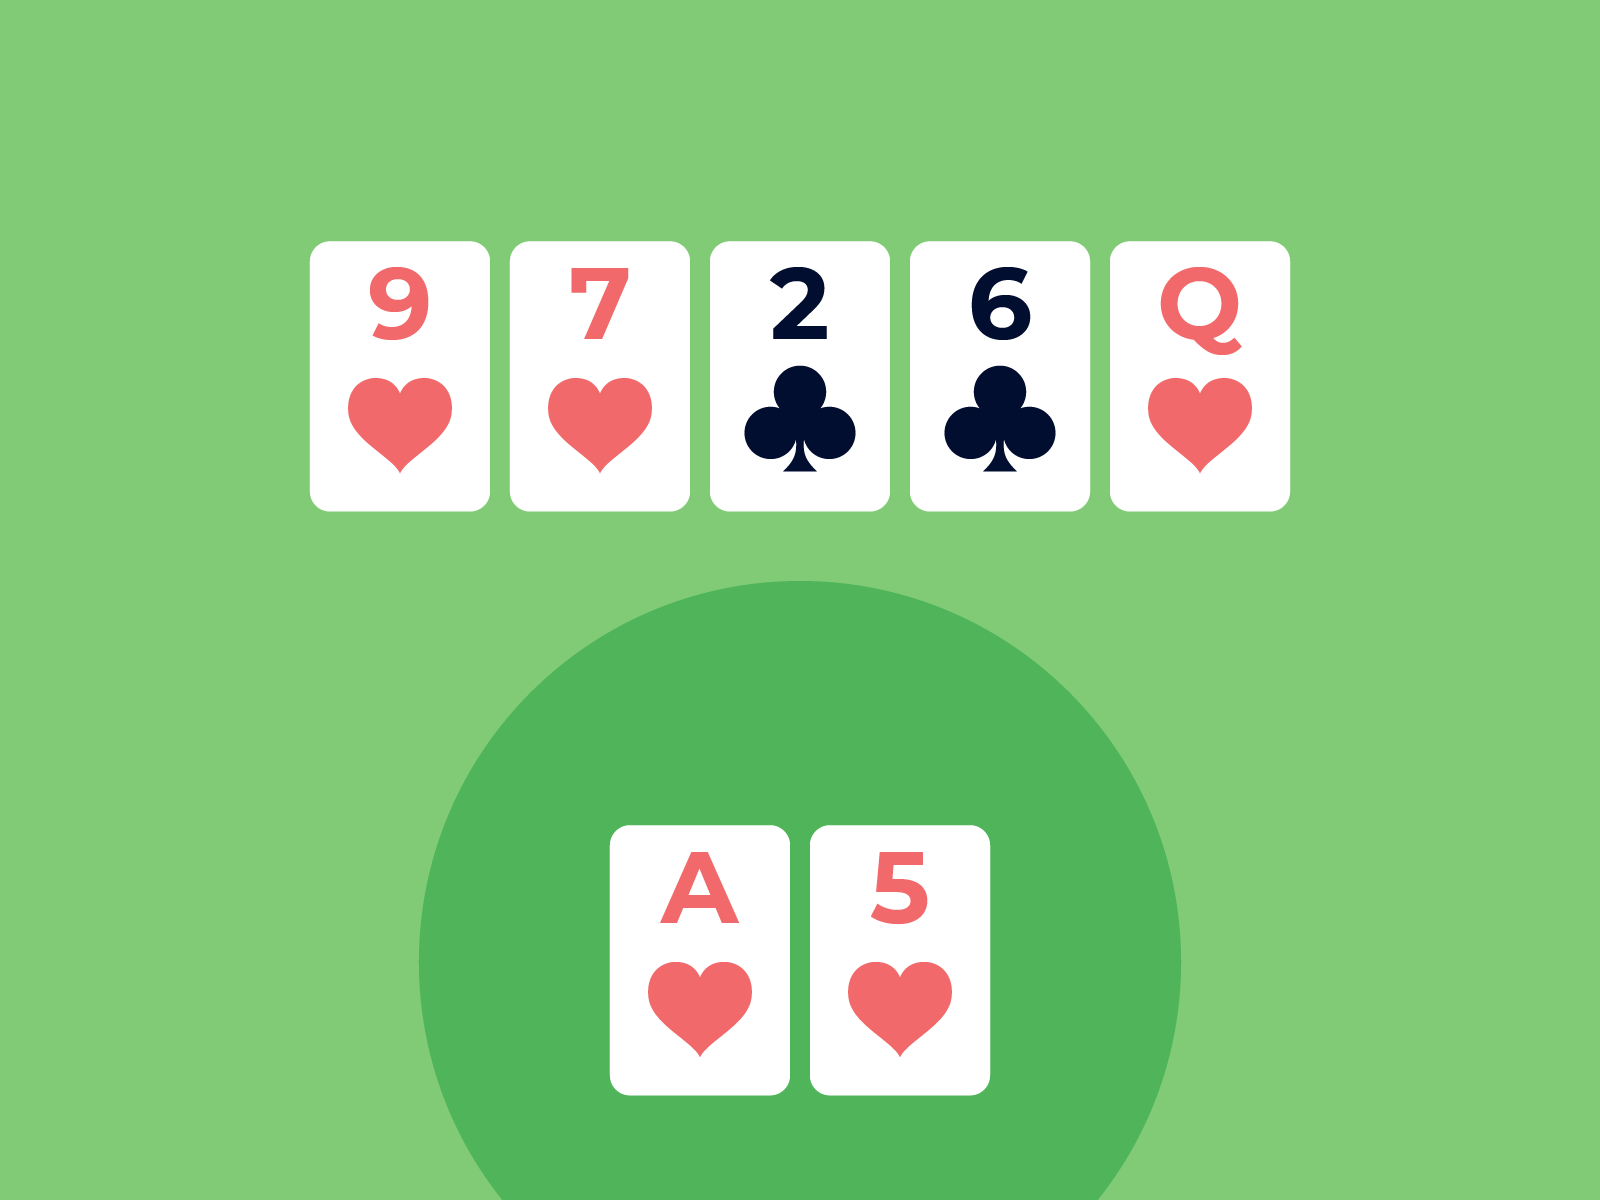 Poker hands example